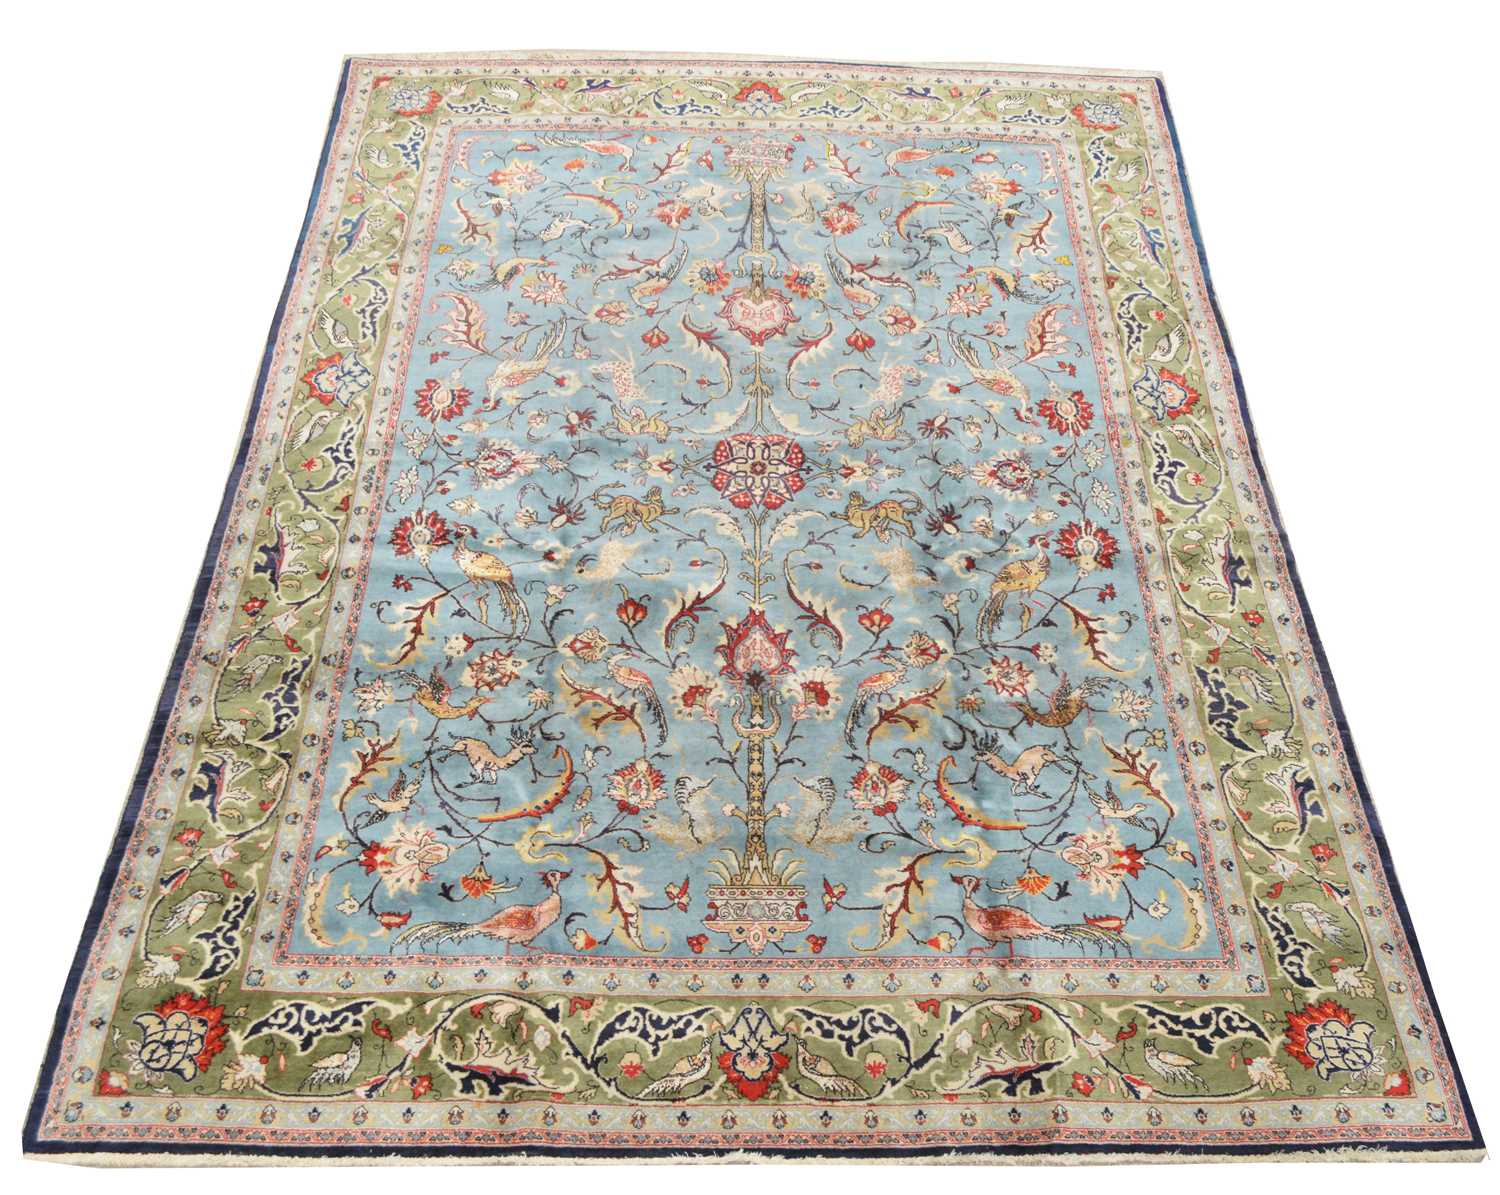 652 - Antique Qum carpet, 